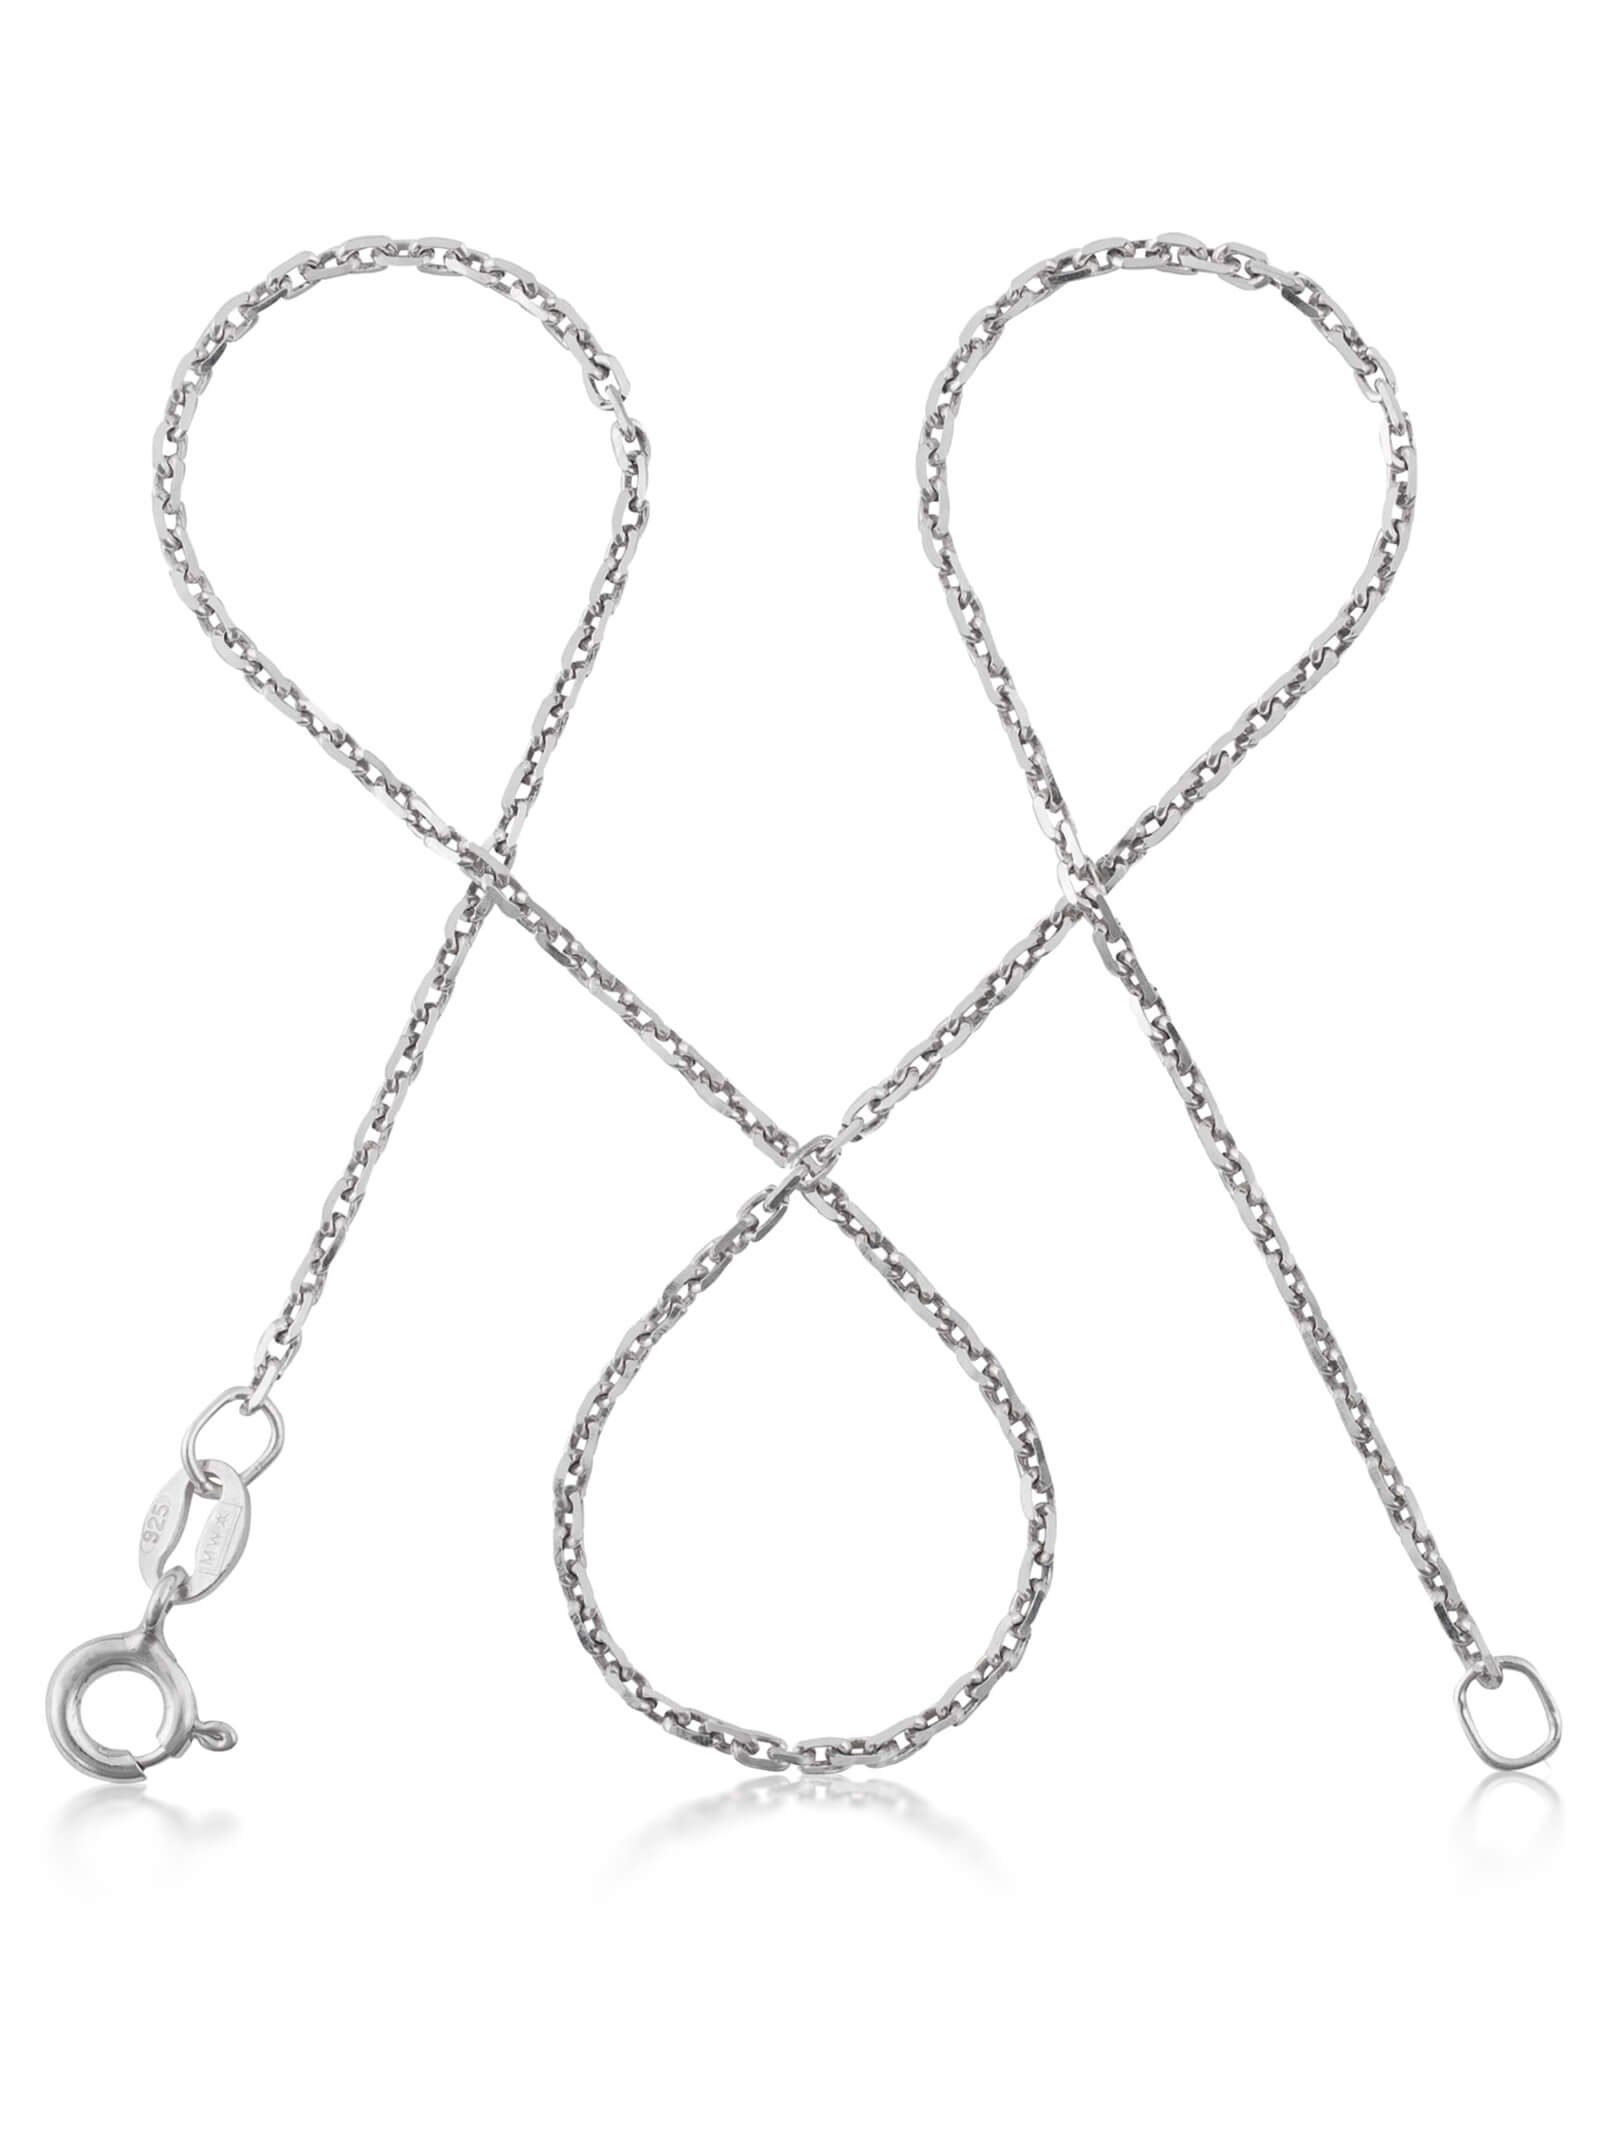 Halskette Anhänger, 925 Silberkette Sterling 45cm, Damen Rund, modabilé Ankerkette ohne Silber 1,3mm, DELICATE Kette